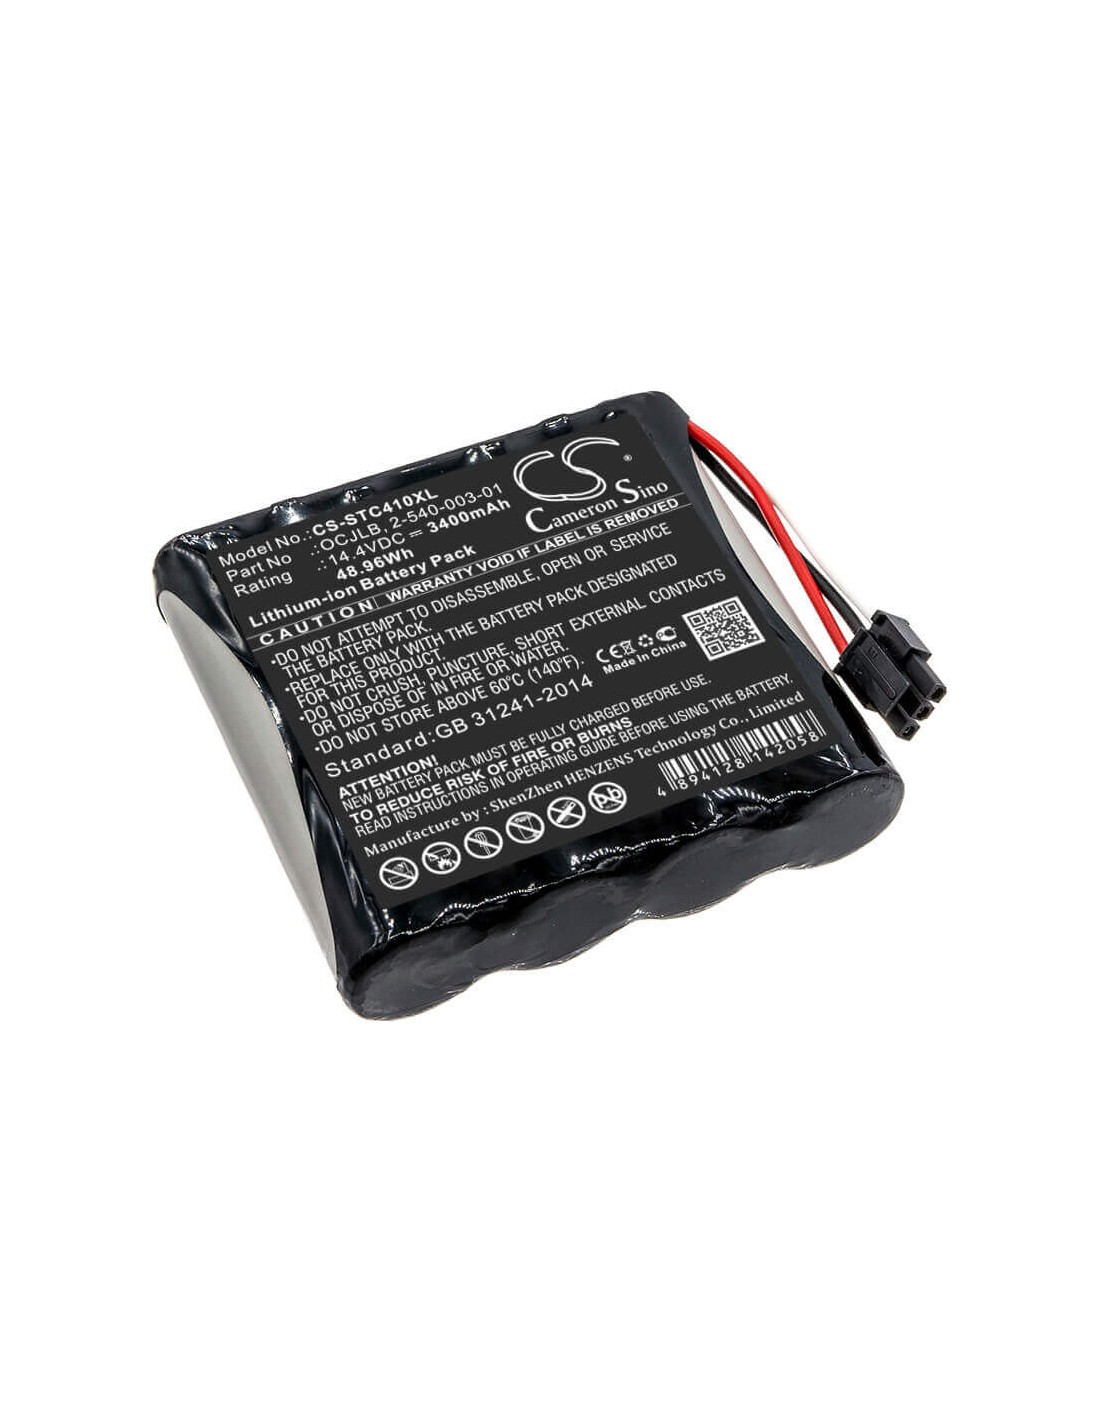 Battery for Soundcast, Ocj410, Ocj410-4n 14.4V, 3400mAh - 48.96Wh